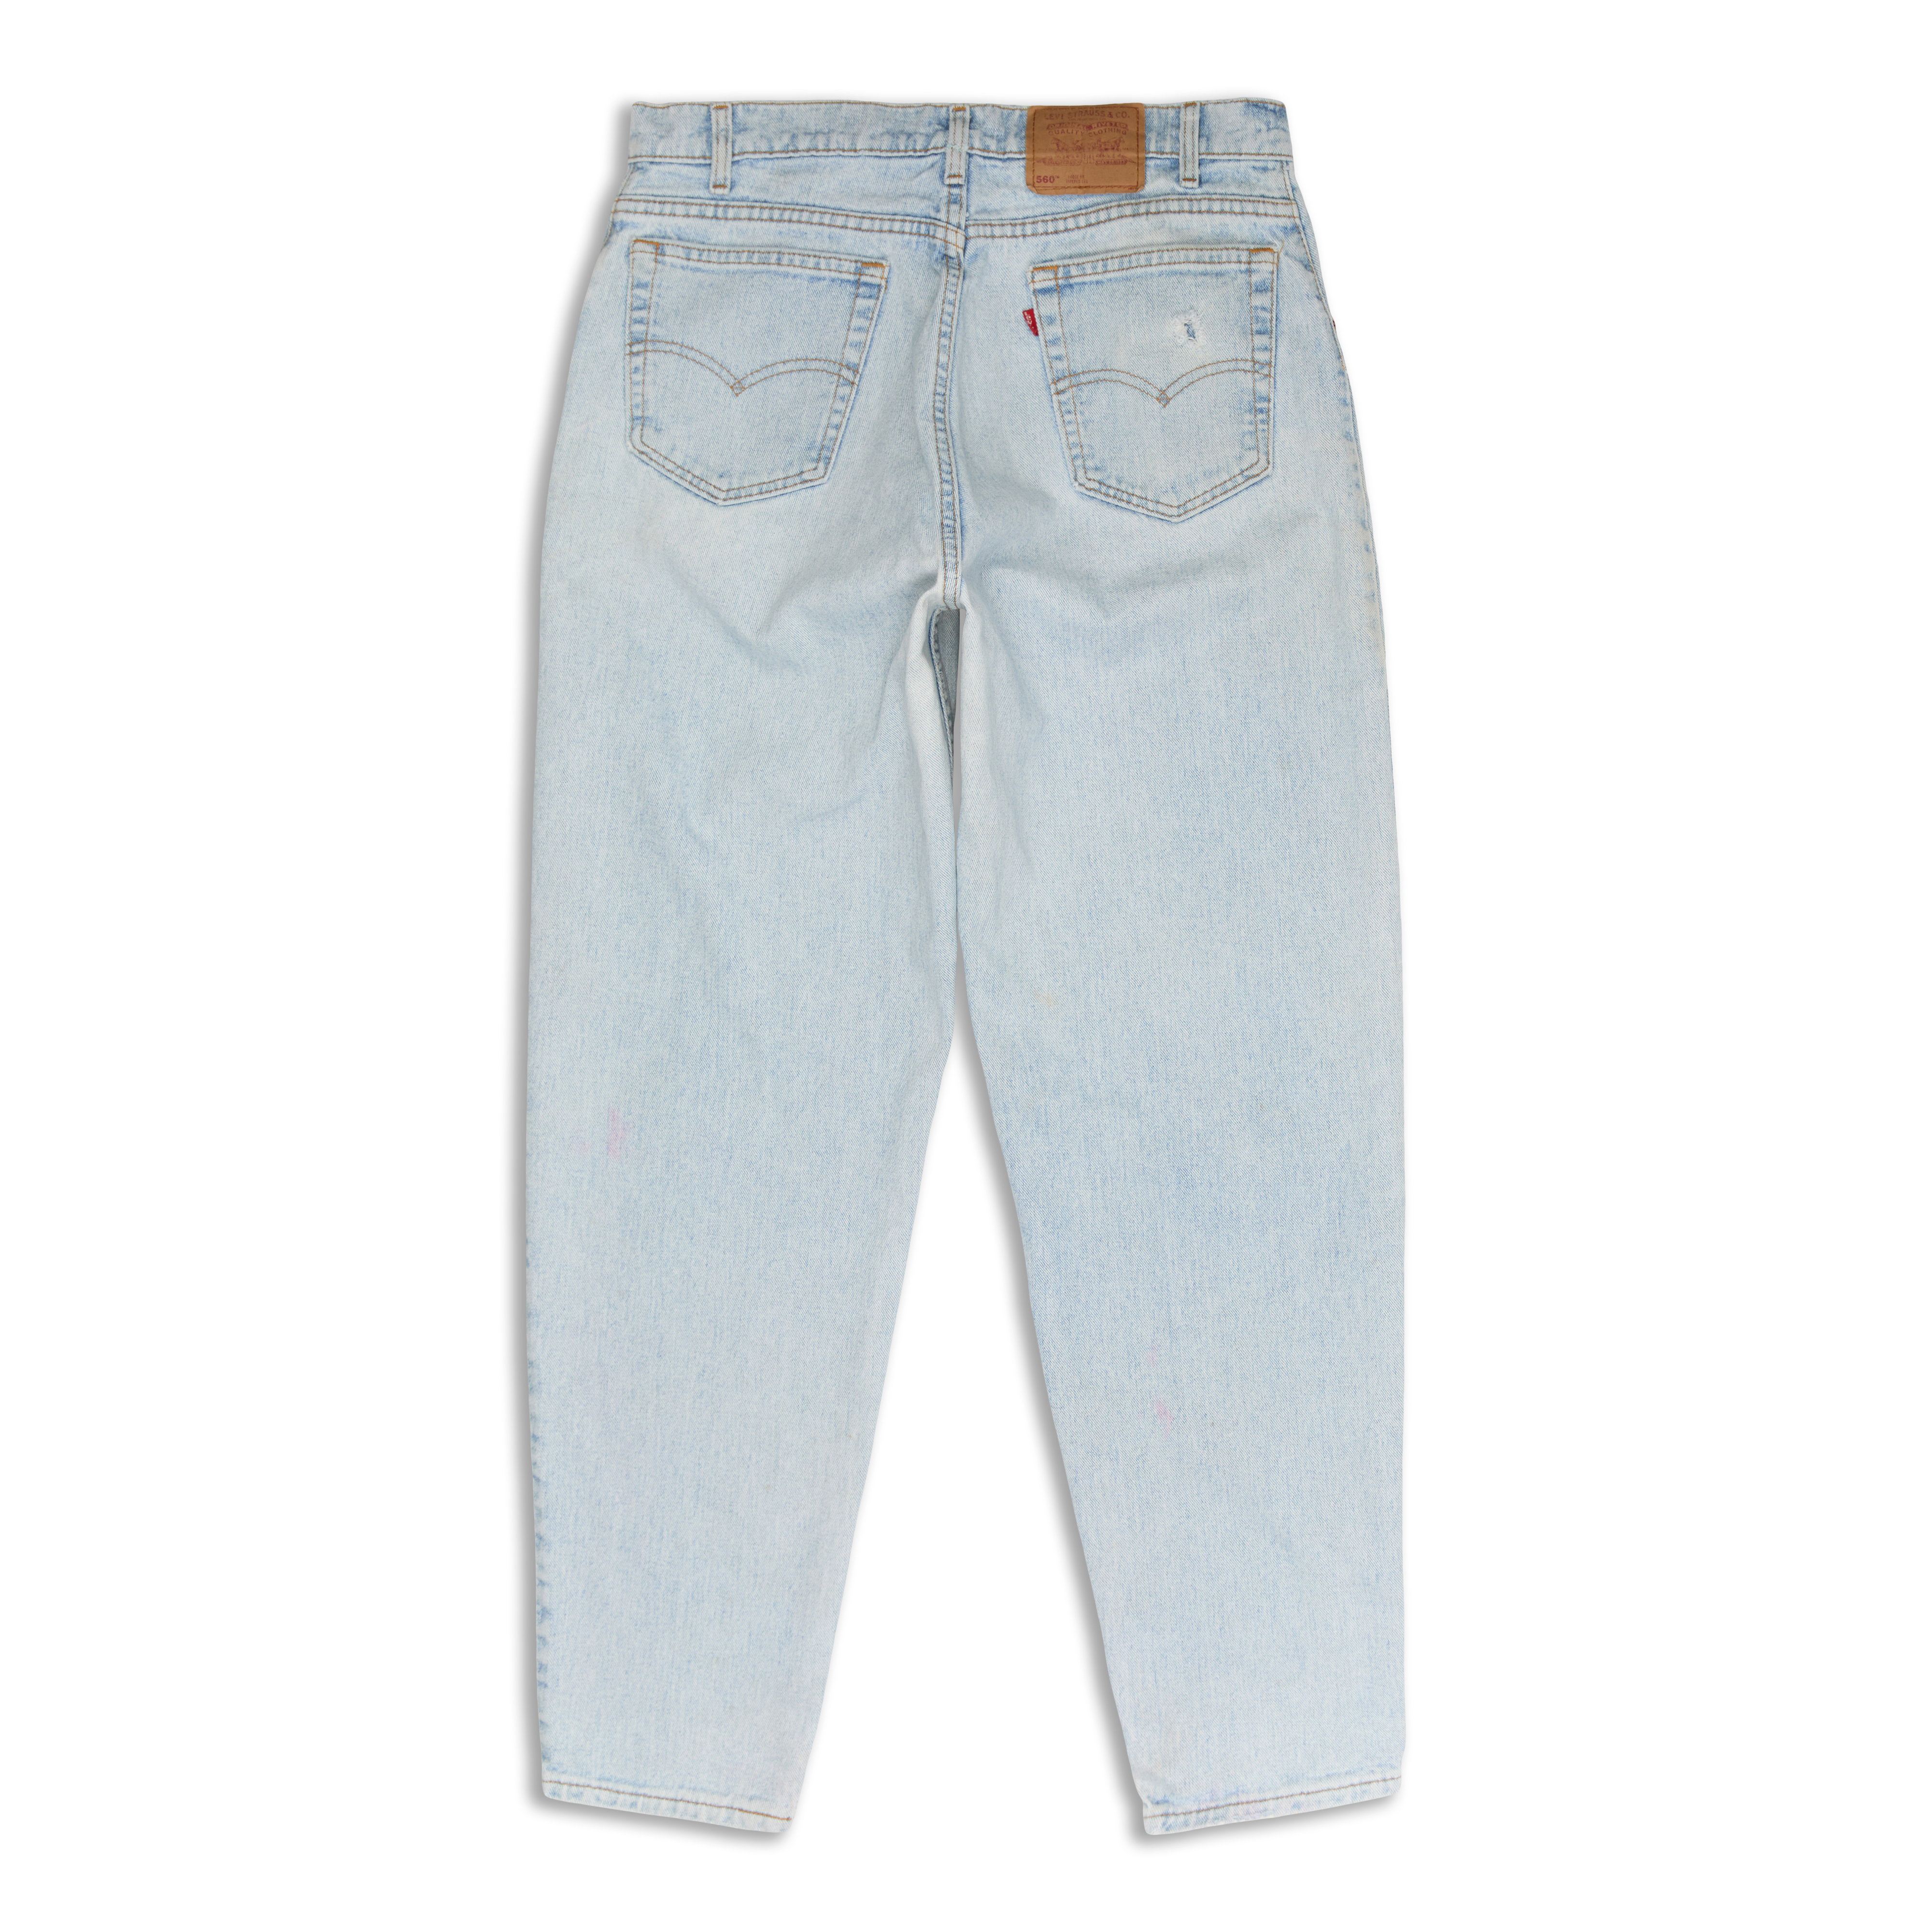 Levis 560™ Comfort Fit Men's Jeans Blue